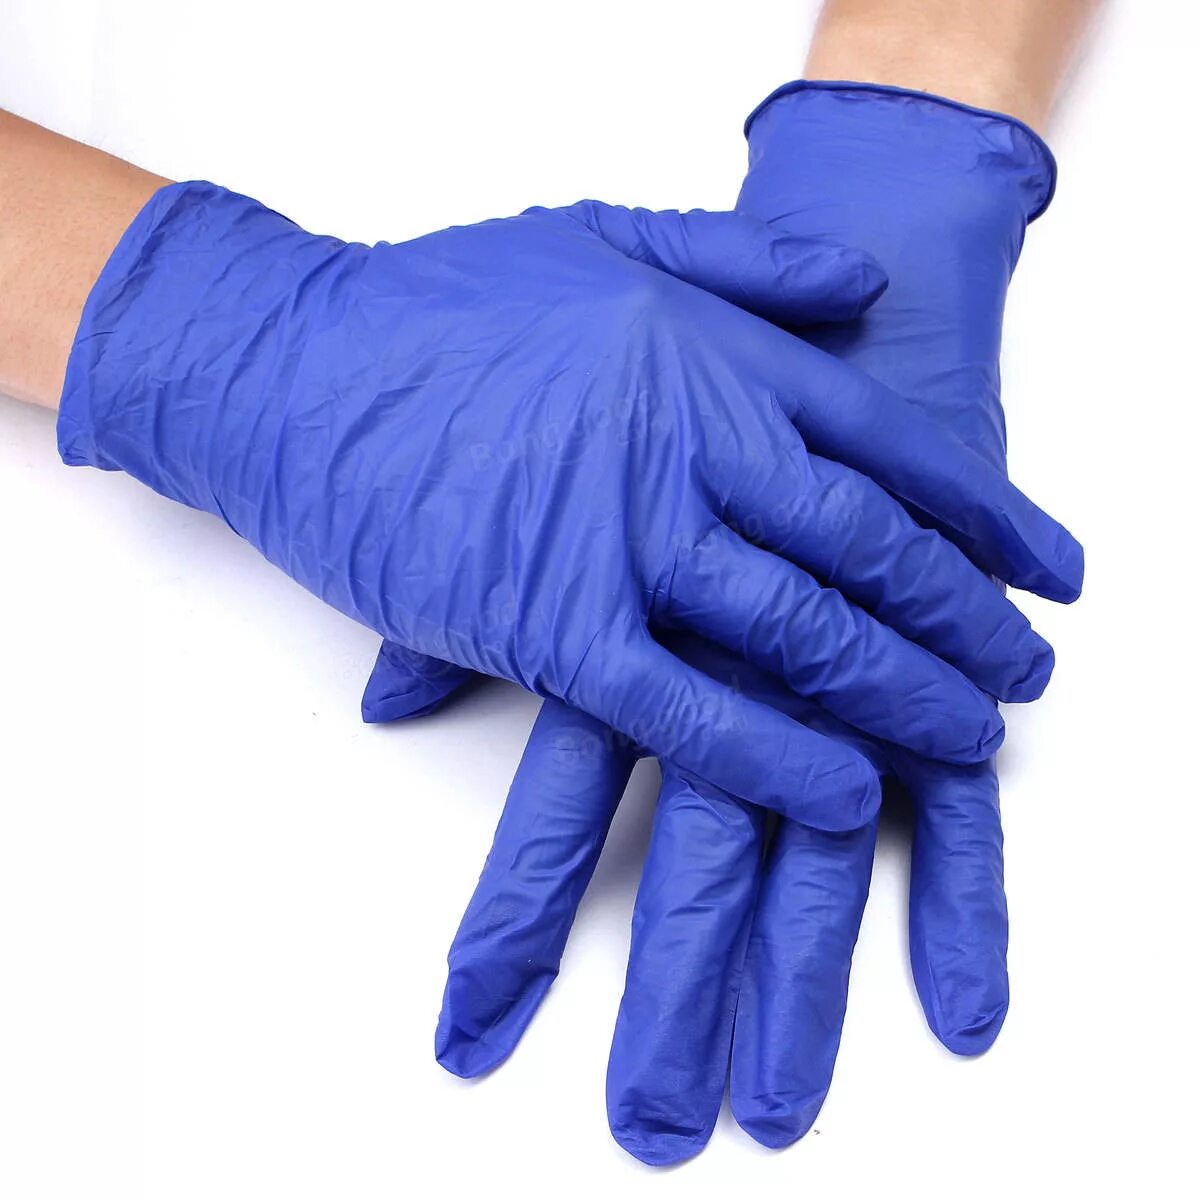 Перчатки нитриловые connect Blue Nitrile. Basic Medical перчатки латексные неопудренные. Nitrile Gloves перчатки. Перчатки нитриловые смотровые Disposable Gloves.